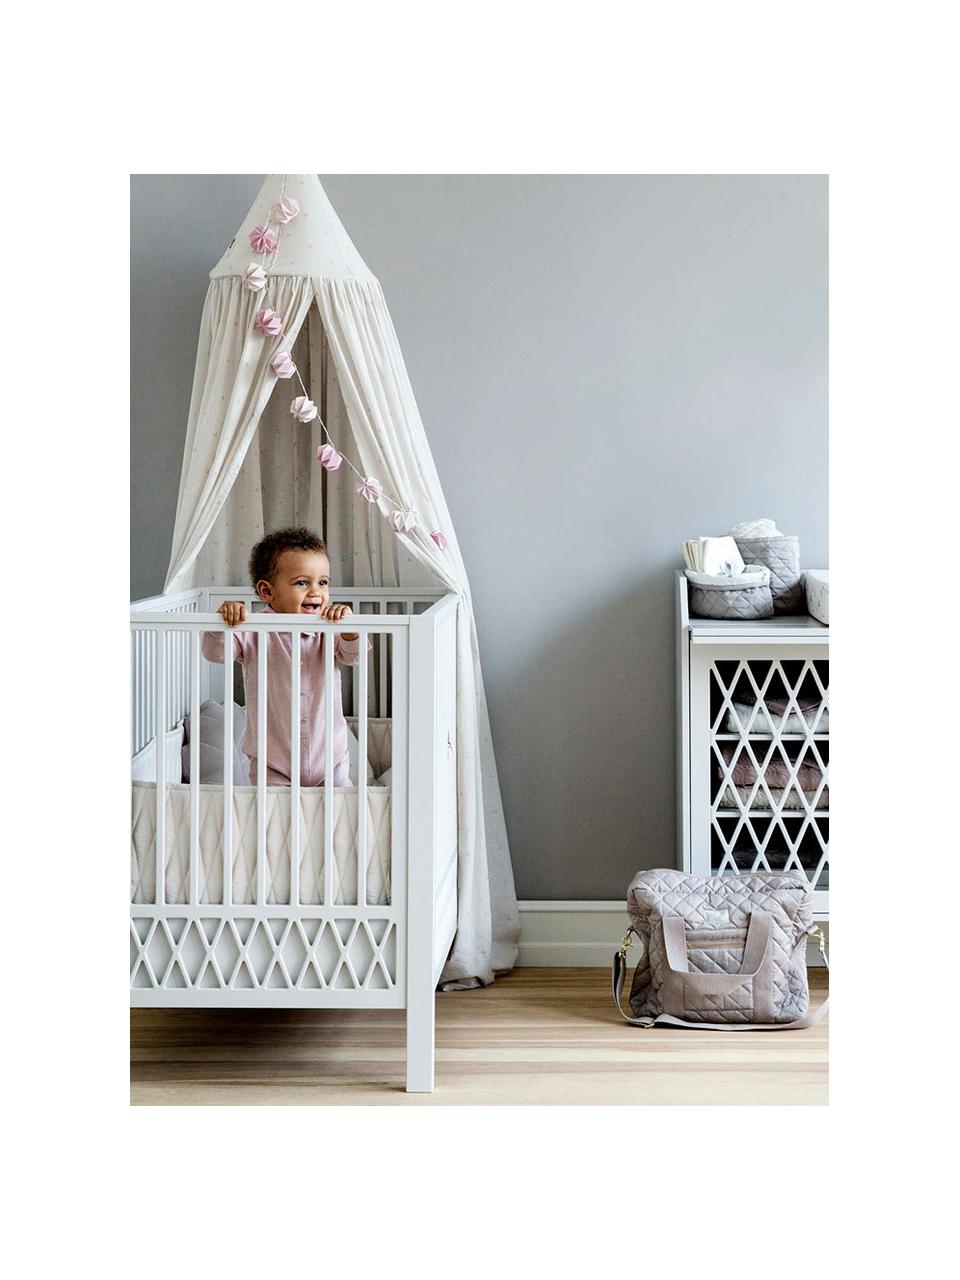 Baby-Bett Harlequin in Beige, Birkenholz, Mittledichte Holzfaserplatte (MDF), lackiert mit VOC-freier Farbe, FSC-zertifiziert, Beige, B 72 x L 132 cm